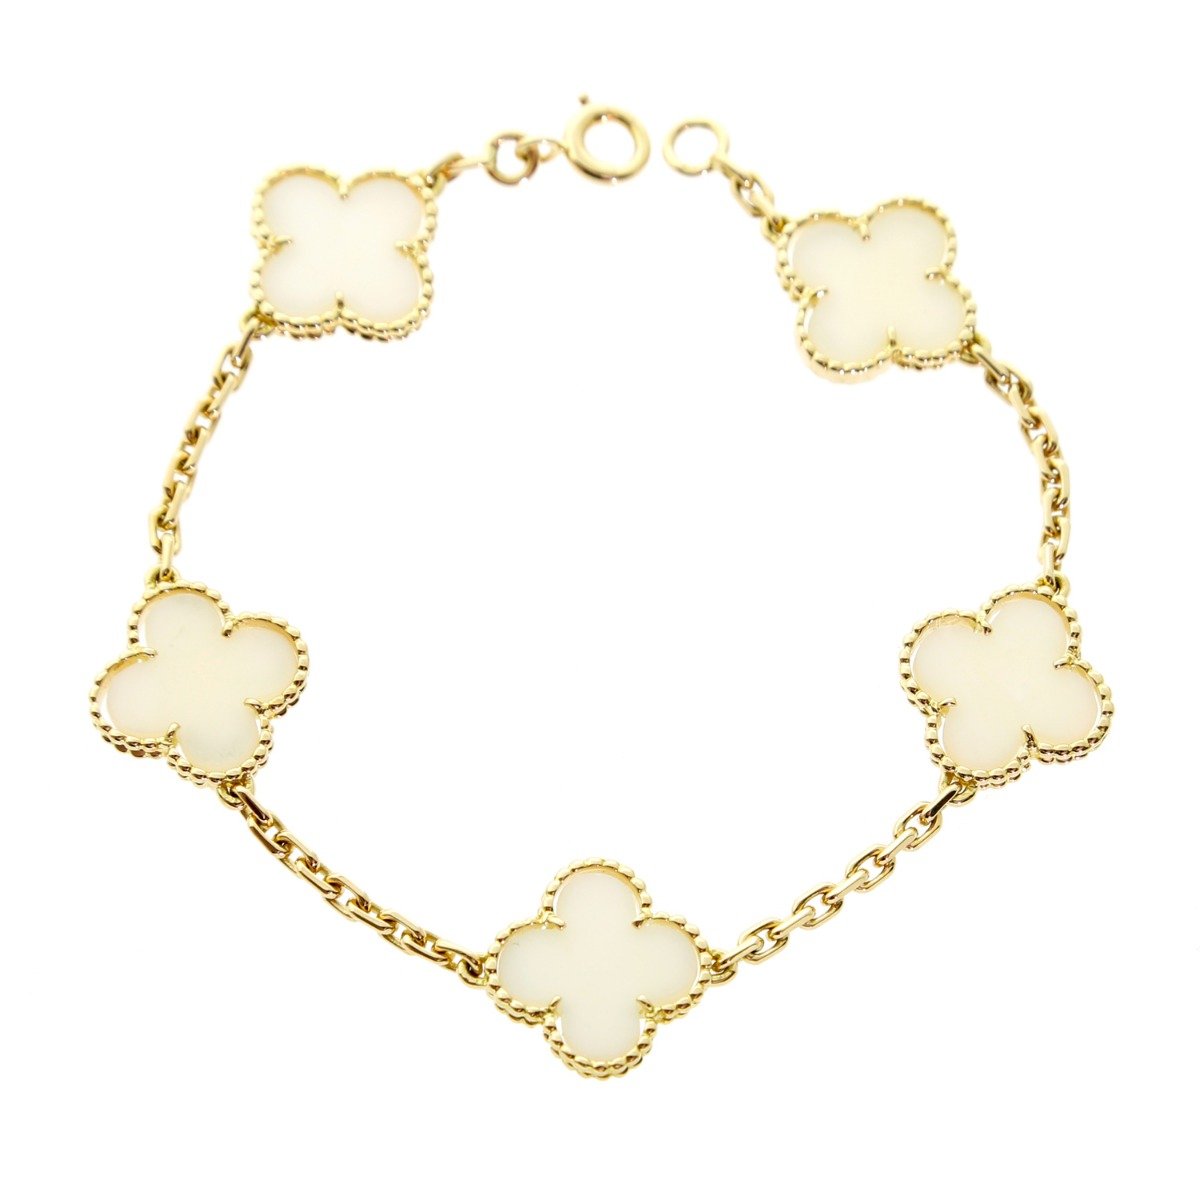 Van Cleef & Arpels Alhambra Bracelet 396027